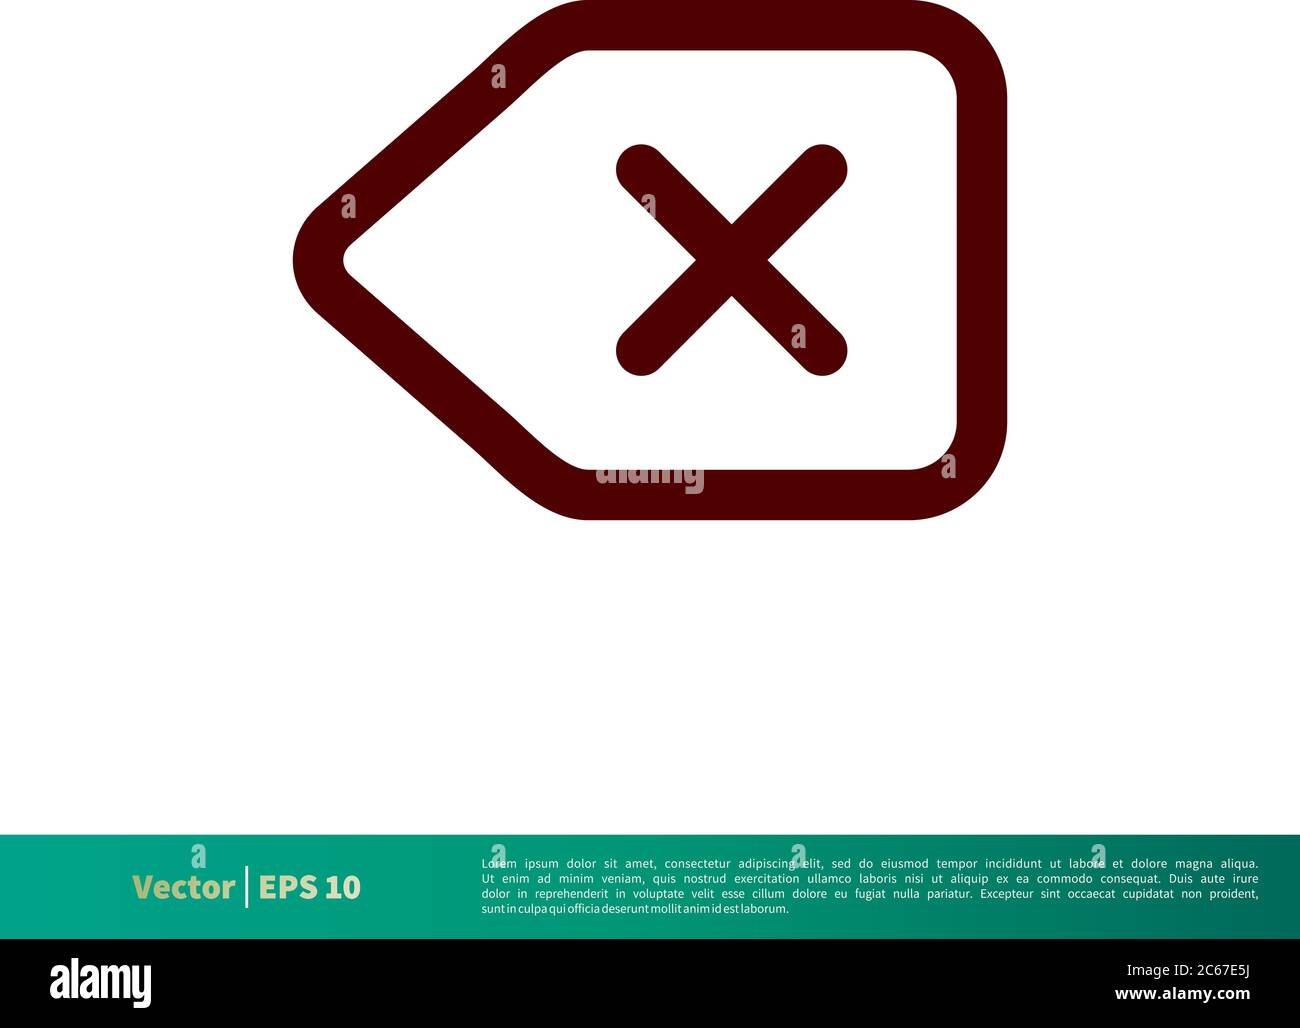 Backspace, Remove, Delete Button Icon Vector Logo Template Illustration Design. Editable Vector EPS 10. Stock Vector